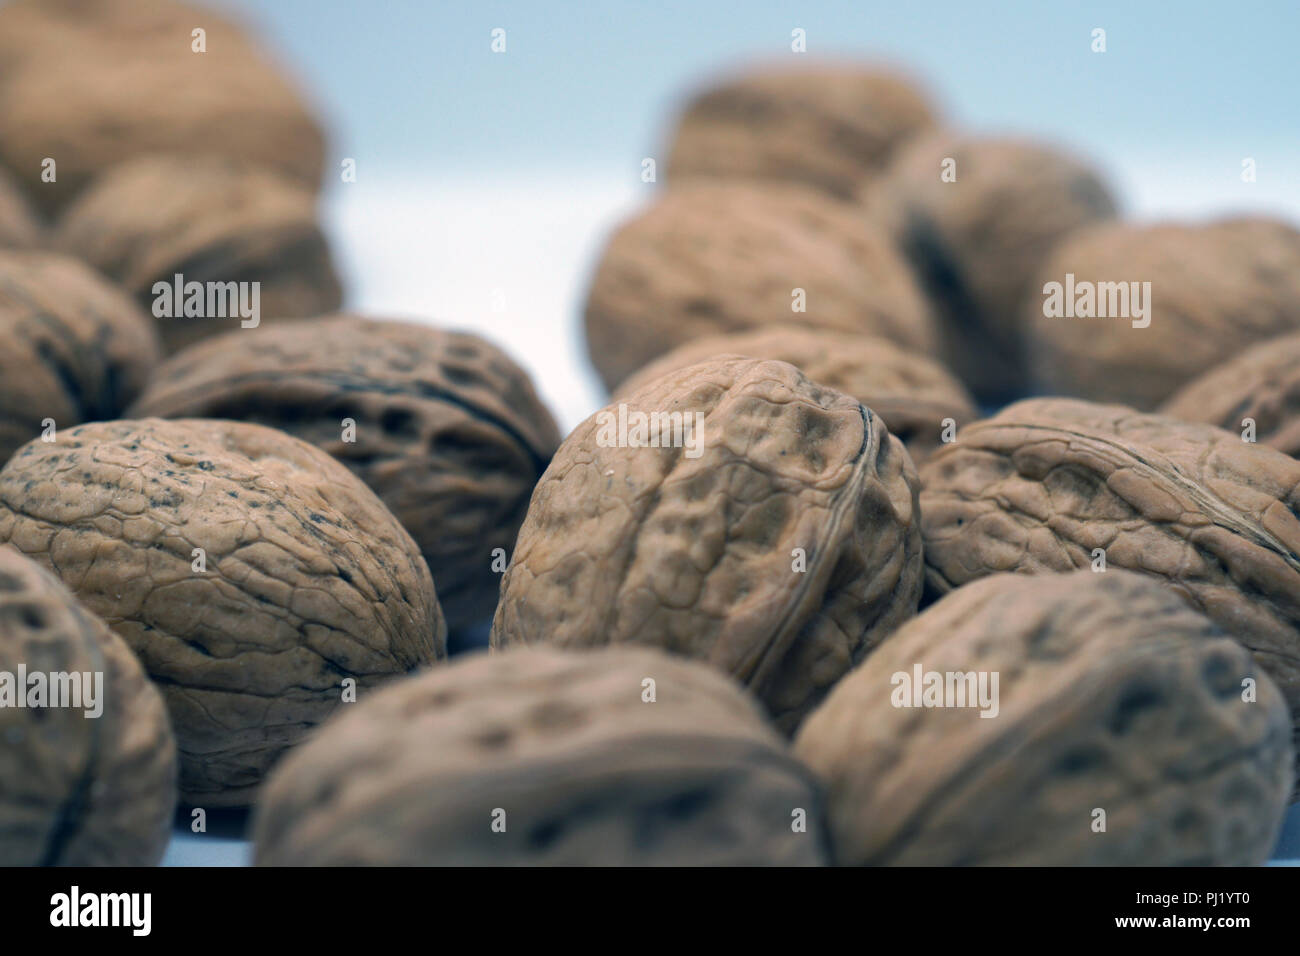 hard dry walnuts Stock Photo